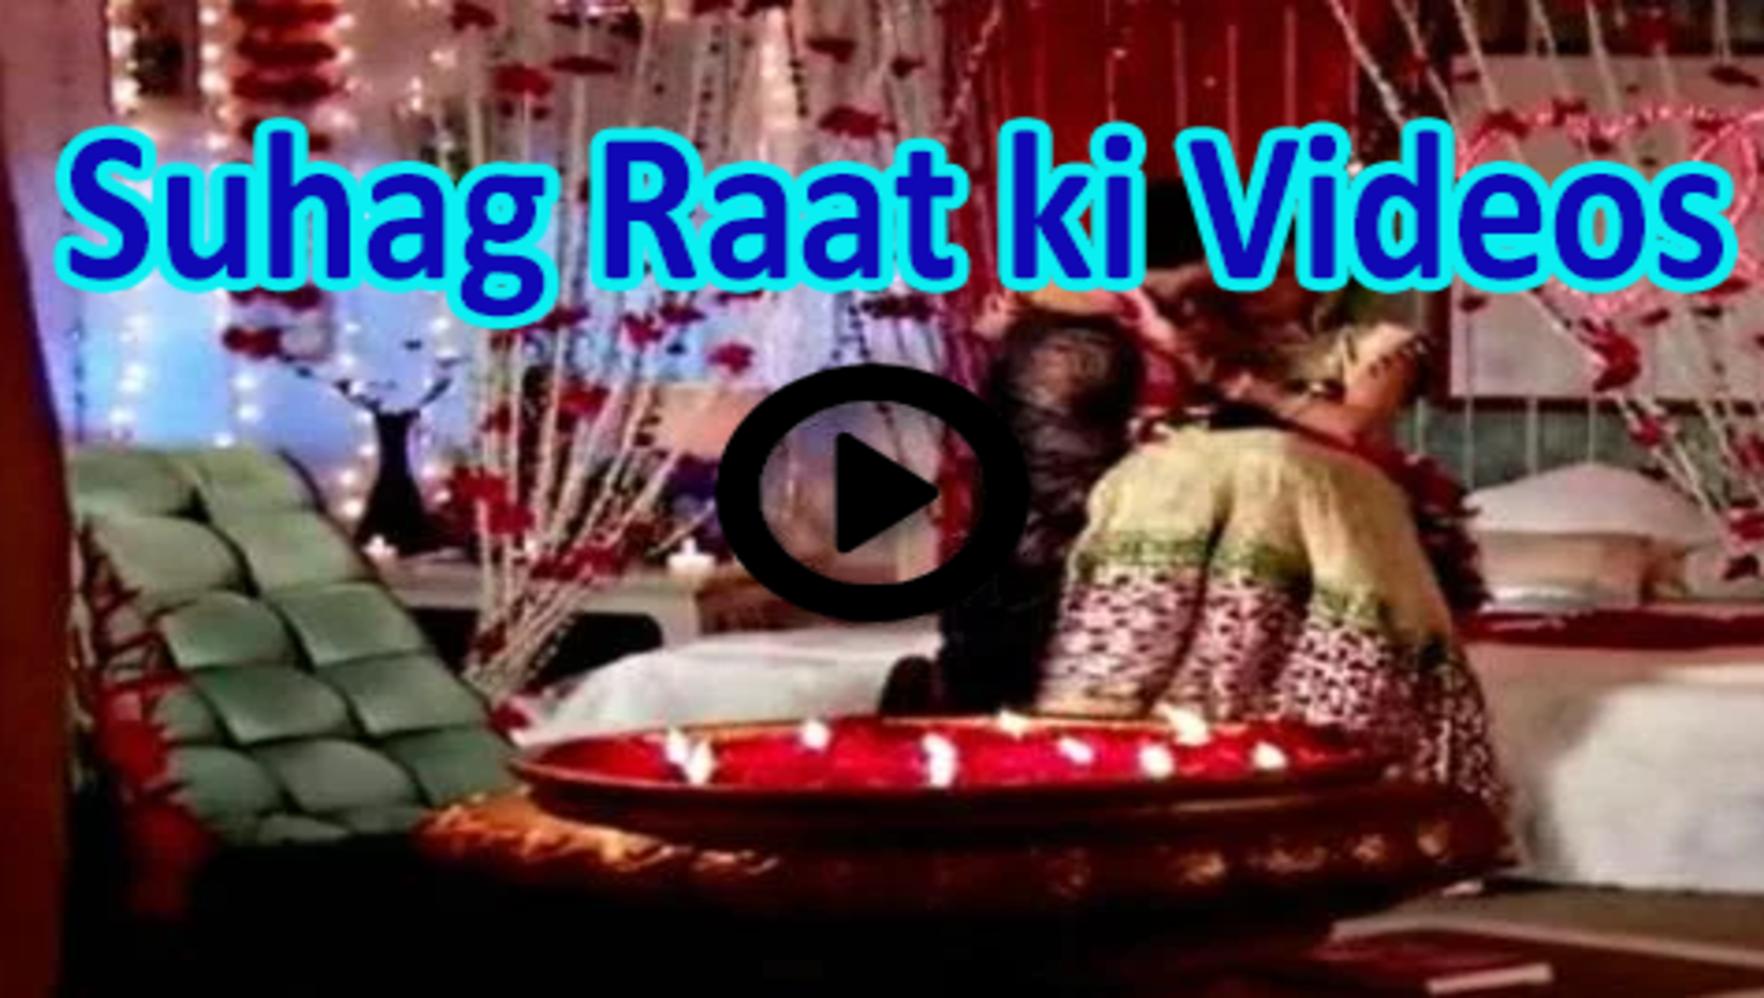 Shadi ki Raat Suhag Raat ki Videos for Android - APK Download